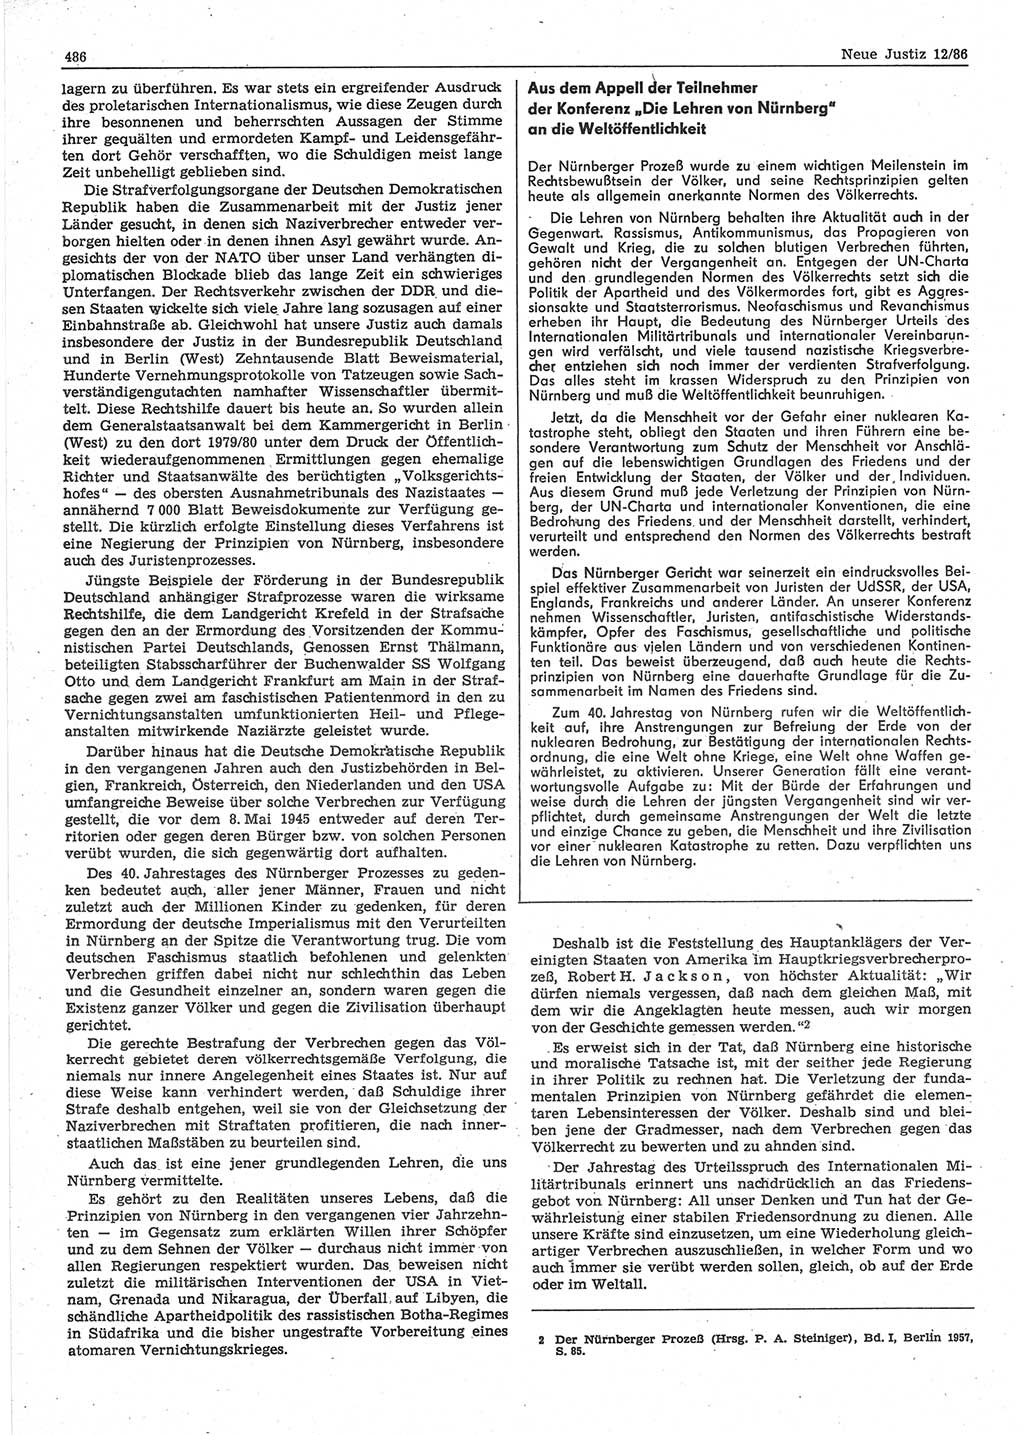 Neue Justiz (NJ), Zeitschrift für sozialistisches Recht und Gesetzlichkeit [Deutsche Demokratische Republik (DDR)], 40. Jahrgang 1986, Seite 486 (NJ DDR 1986, S. 486)